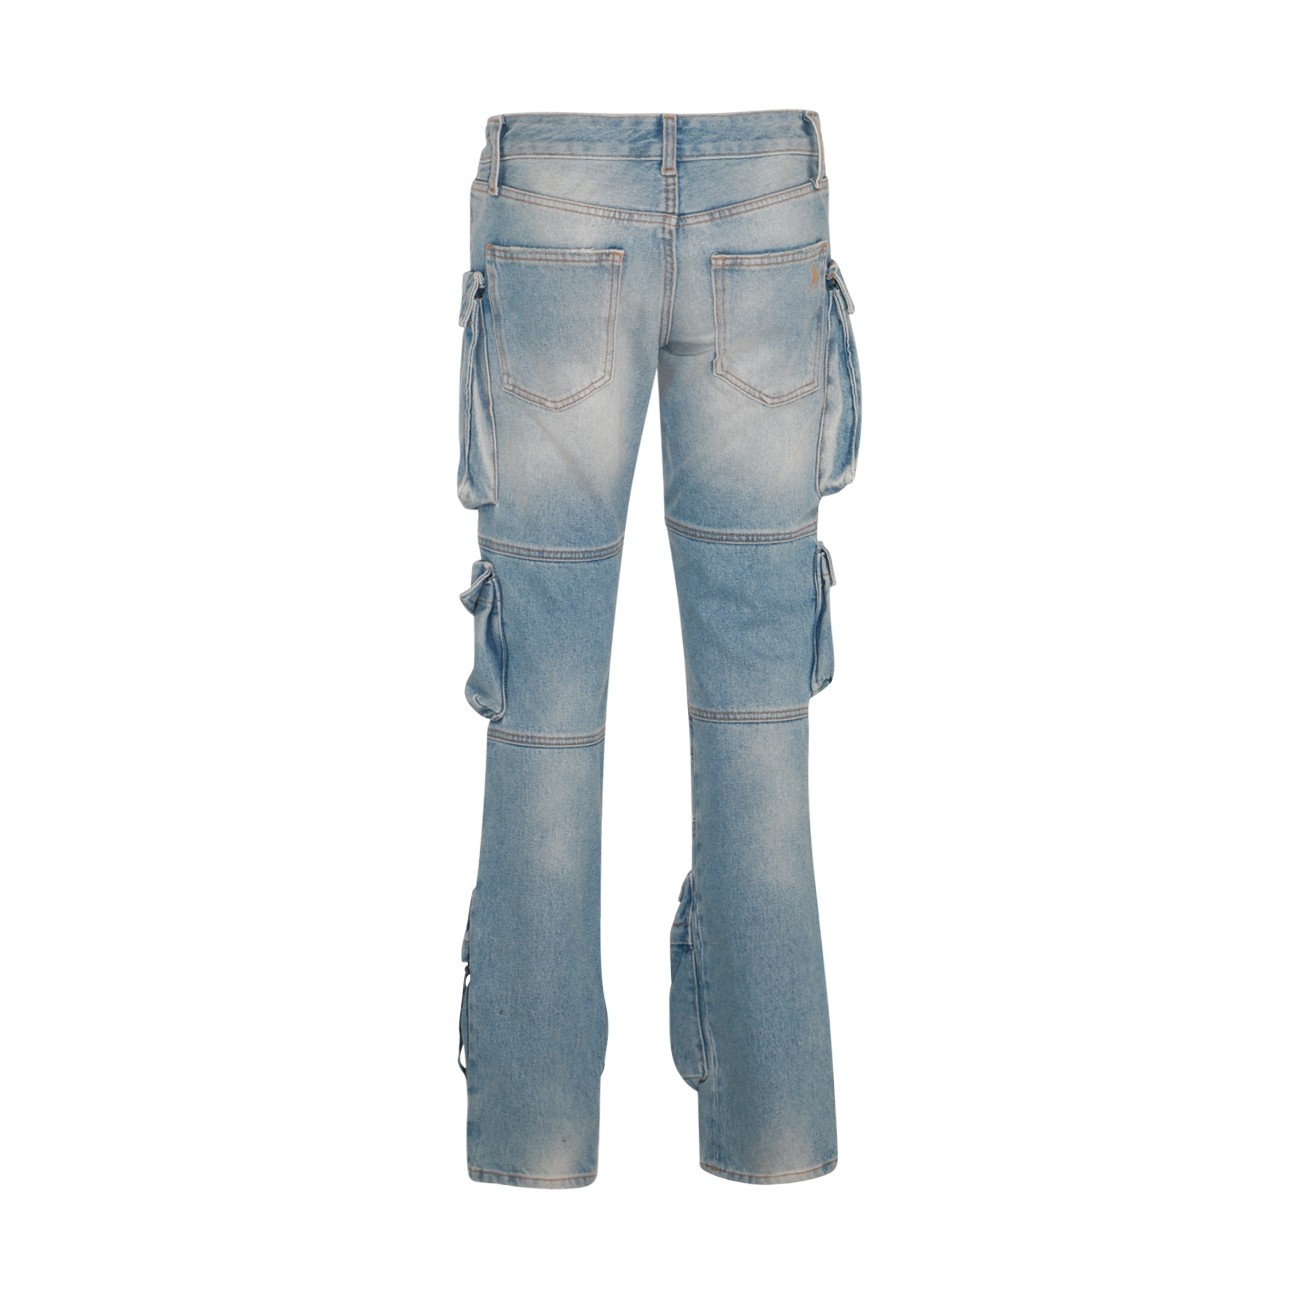 light blue cotton jeans - 2